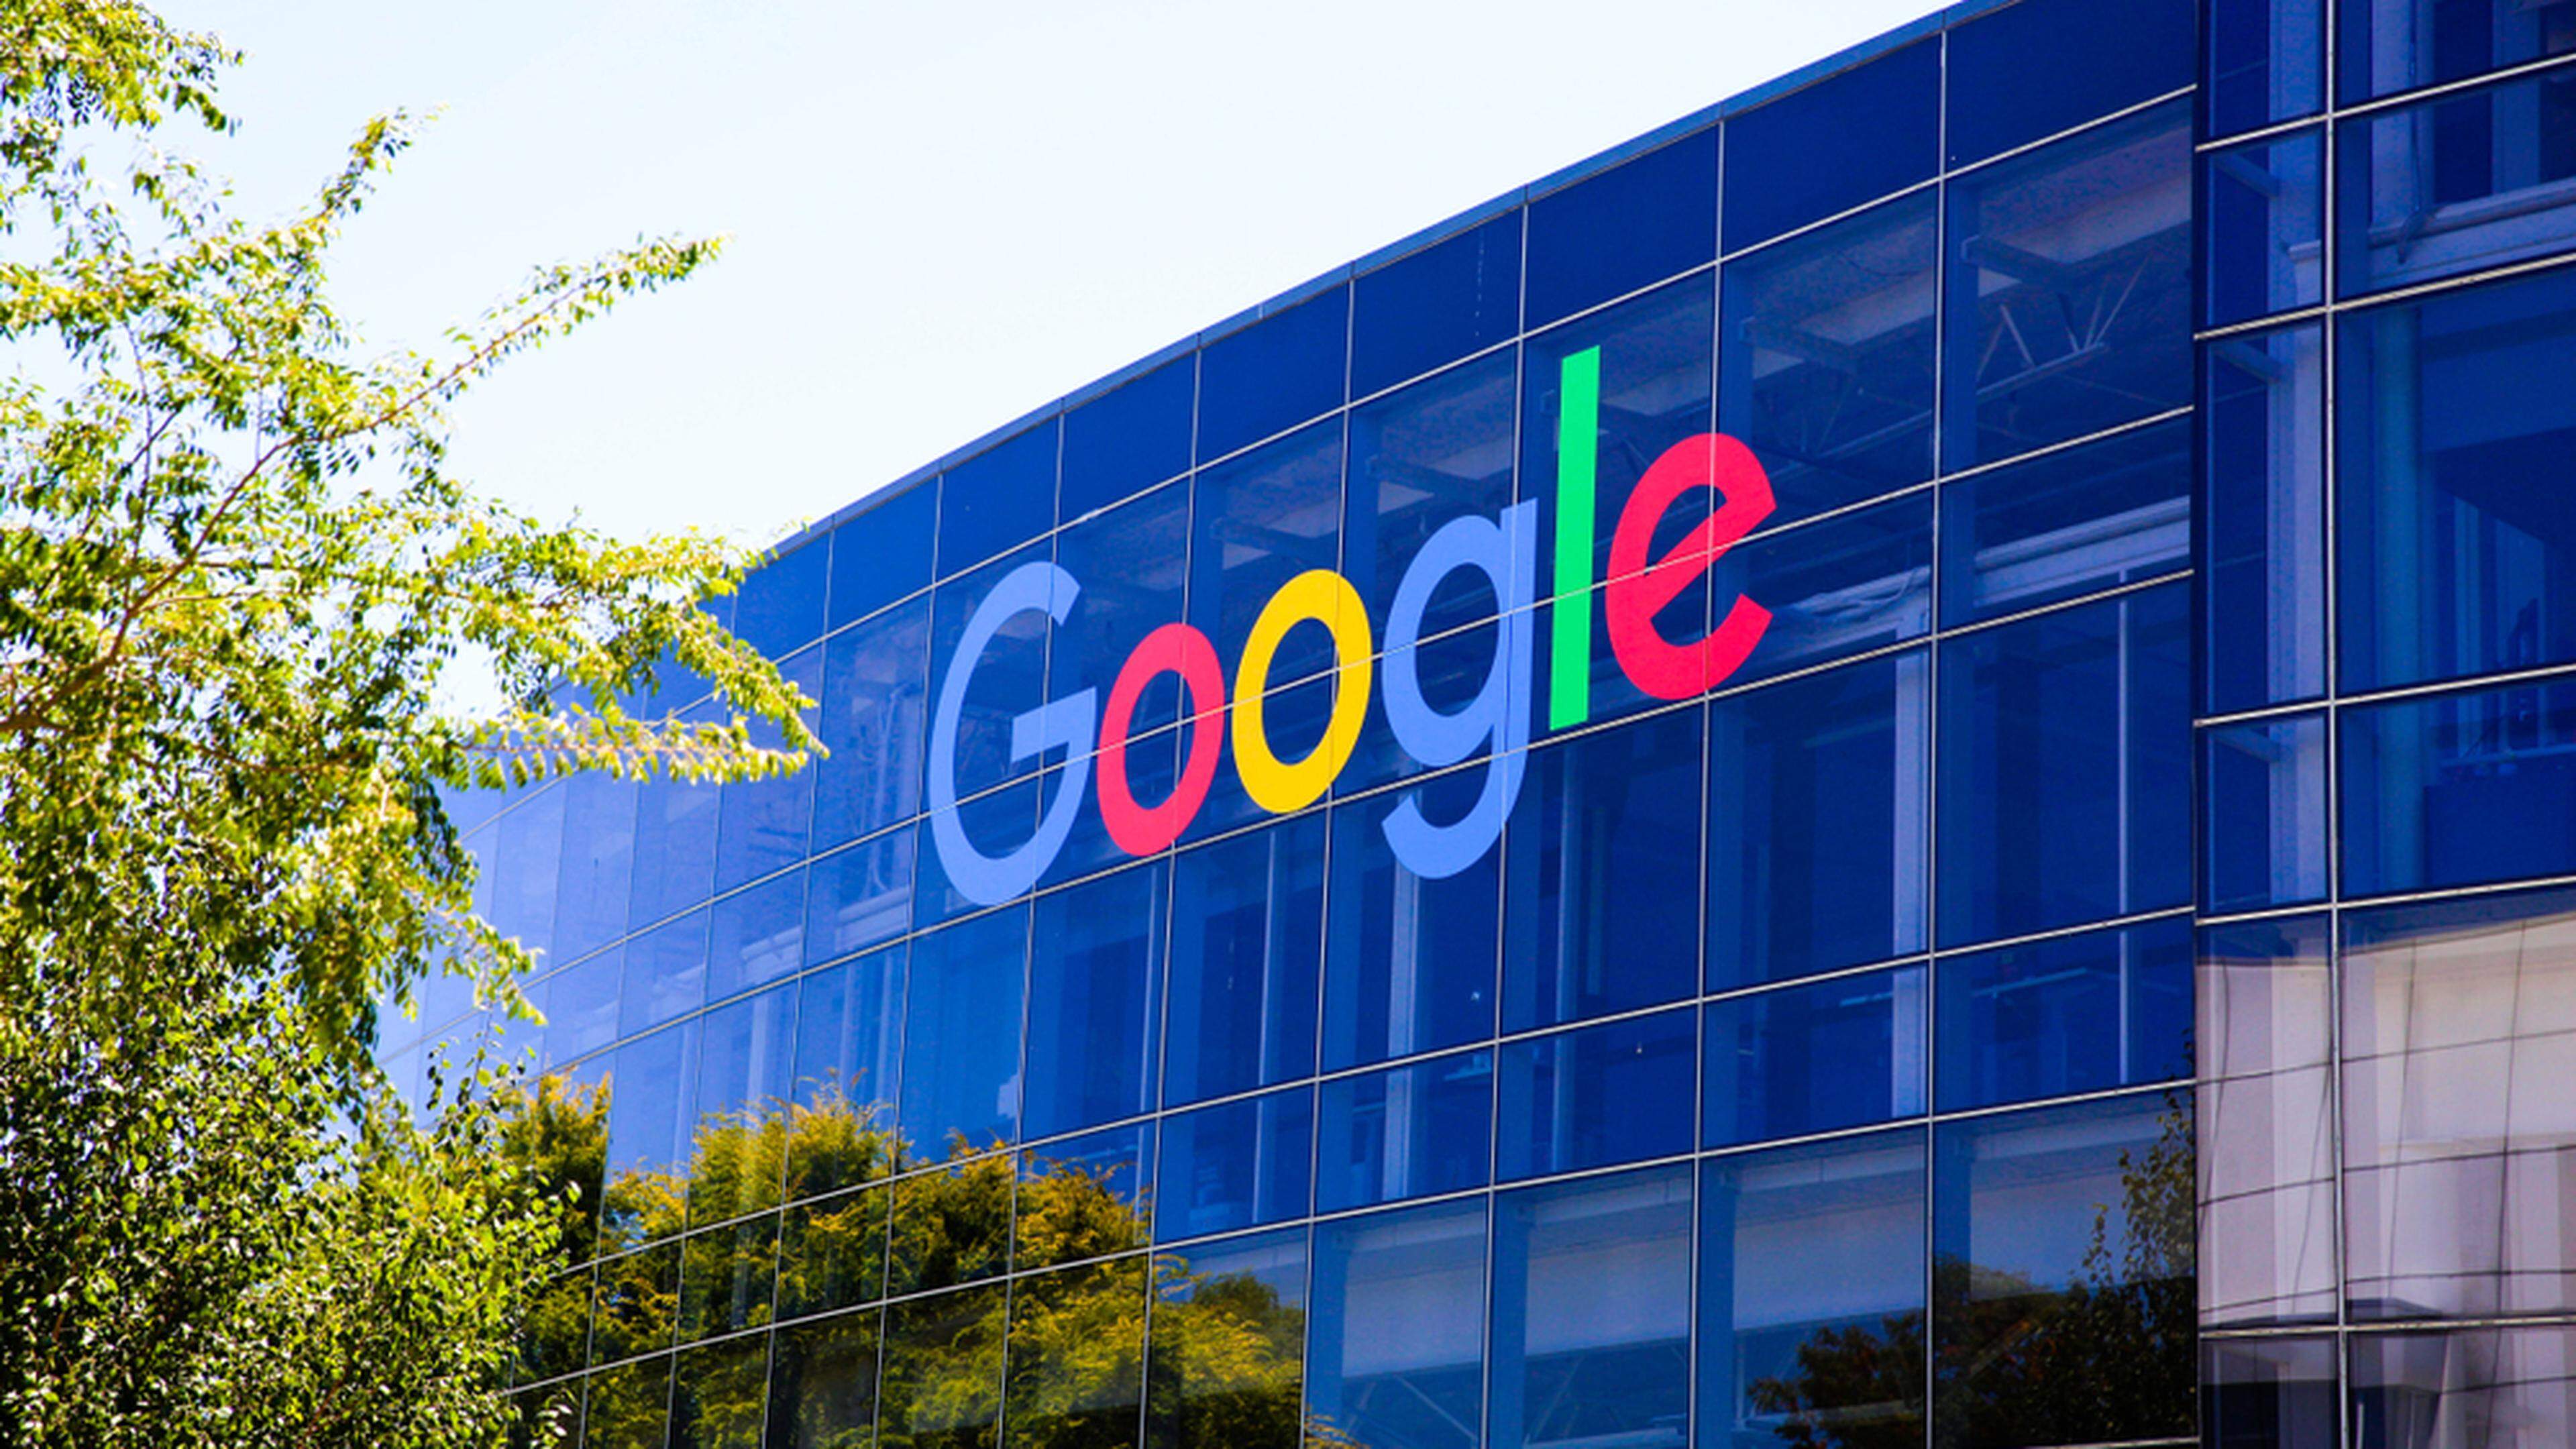 Epic Games e Google chegam a acordo sobre pagamento em serviço de música, Empresas